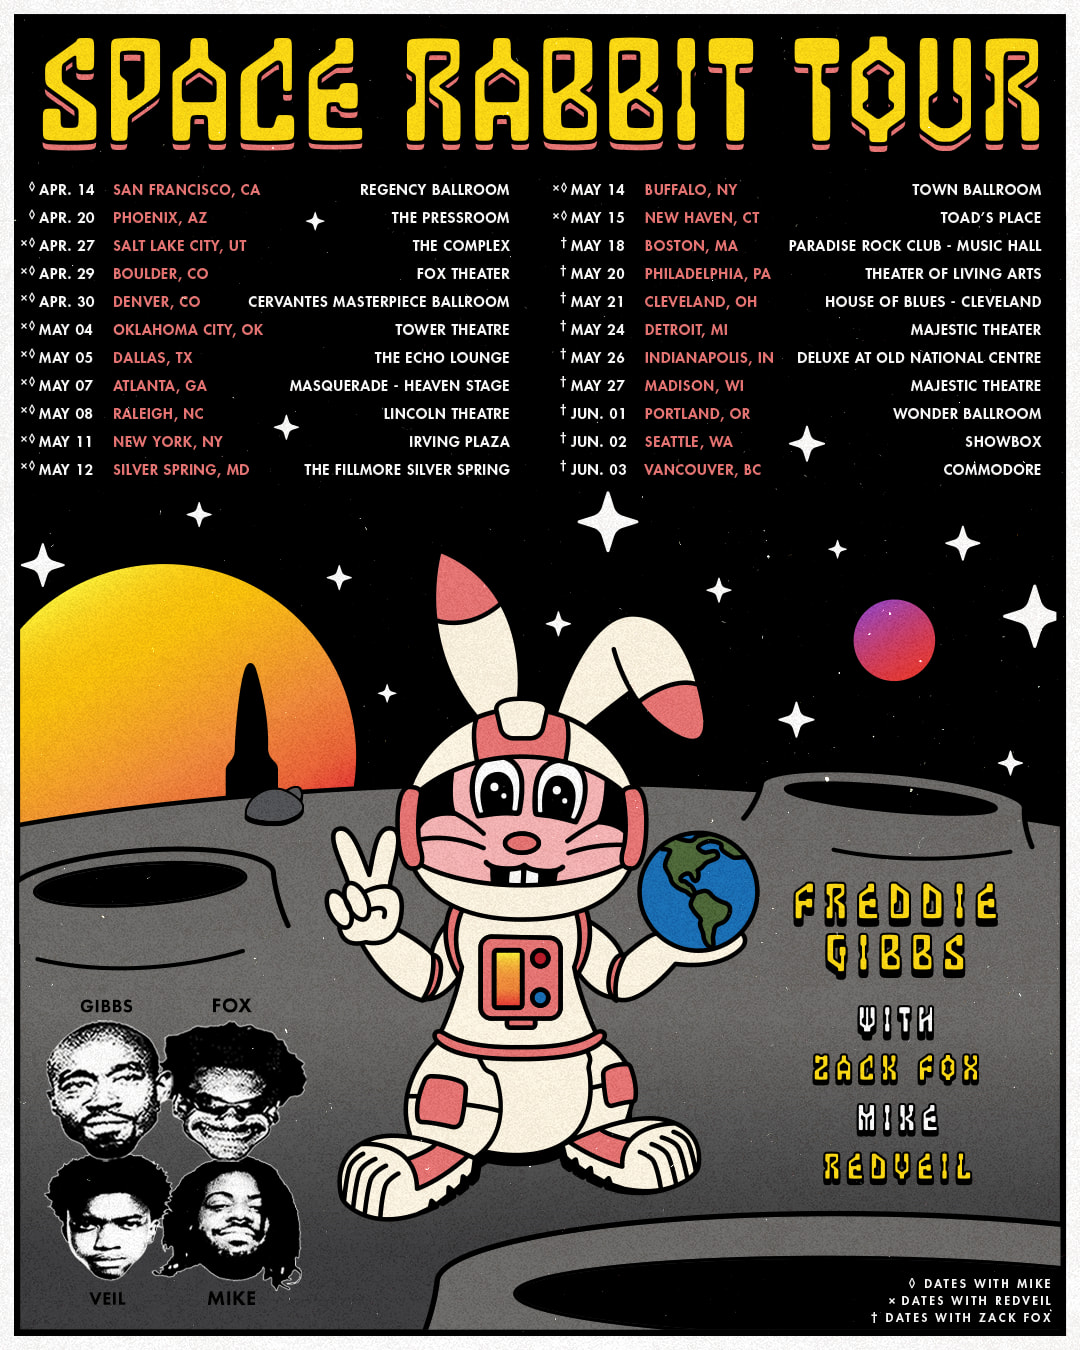 freddie gibbs tour flyer with dates